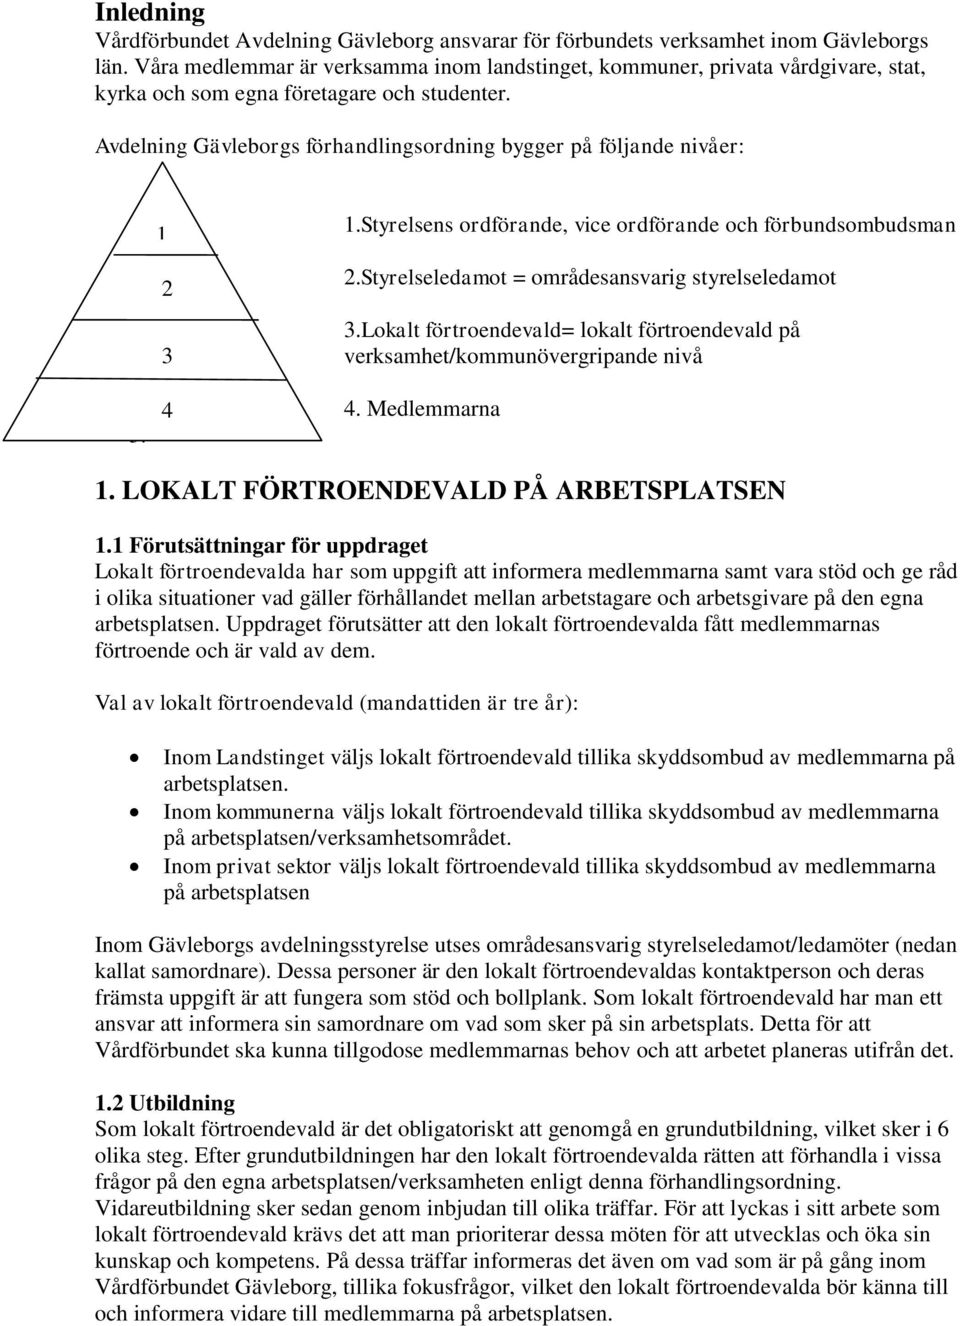 Avdelning Gävleborgs förhandlingsordning bygger på följande nivåer: 1 2 3 1.Styrelsens ordförande, vice ordförande och förbundsombudsman 2.Styrelseledamot = områdesansvarig styrelseledamot 3.